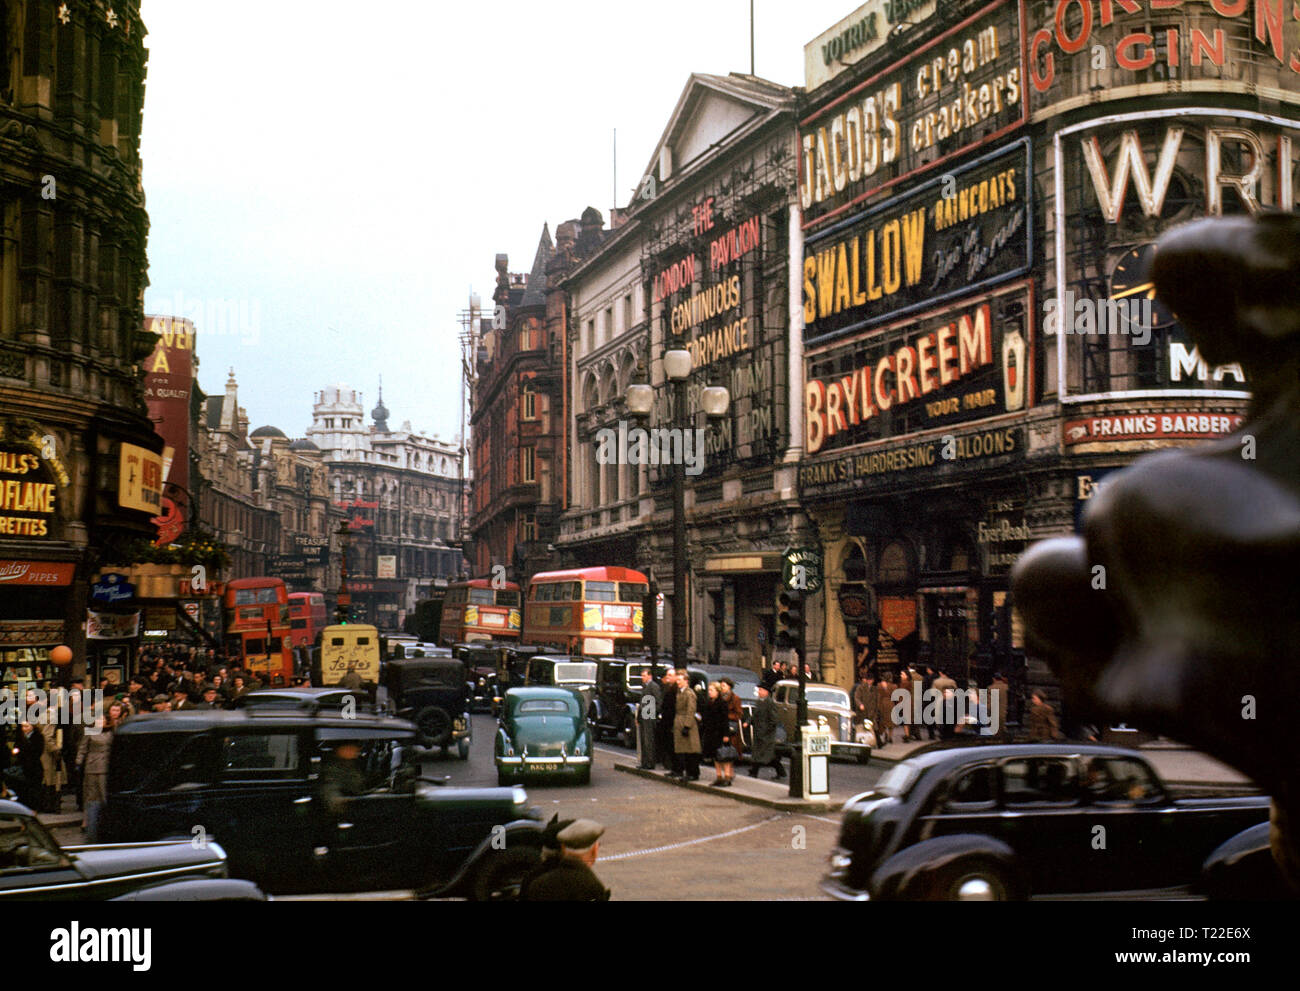 LONDRES PICCADILLY 1940 SHAFTESBURY AVENUE ARCHIVE 1940's Vintage color image of Shaftesbury Avenue Busy con el tráfico tradicional de taxis negros y autobuses rojos de Londres vistos desde Piccadilly Circus, Londres alrededor de 1940 Foto de stock